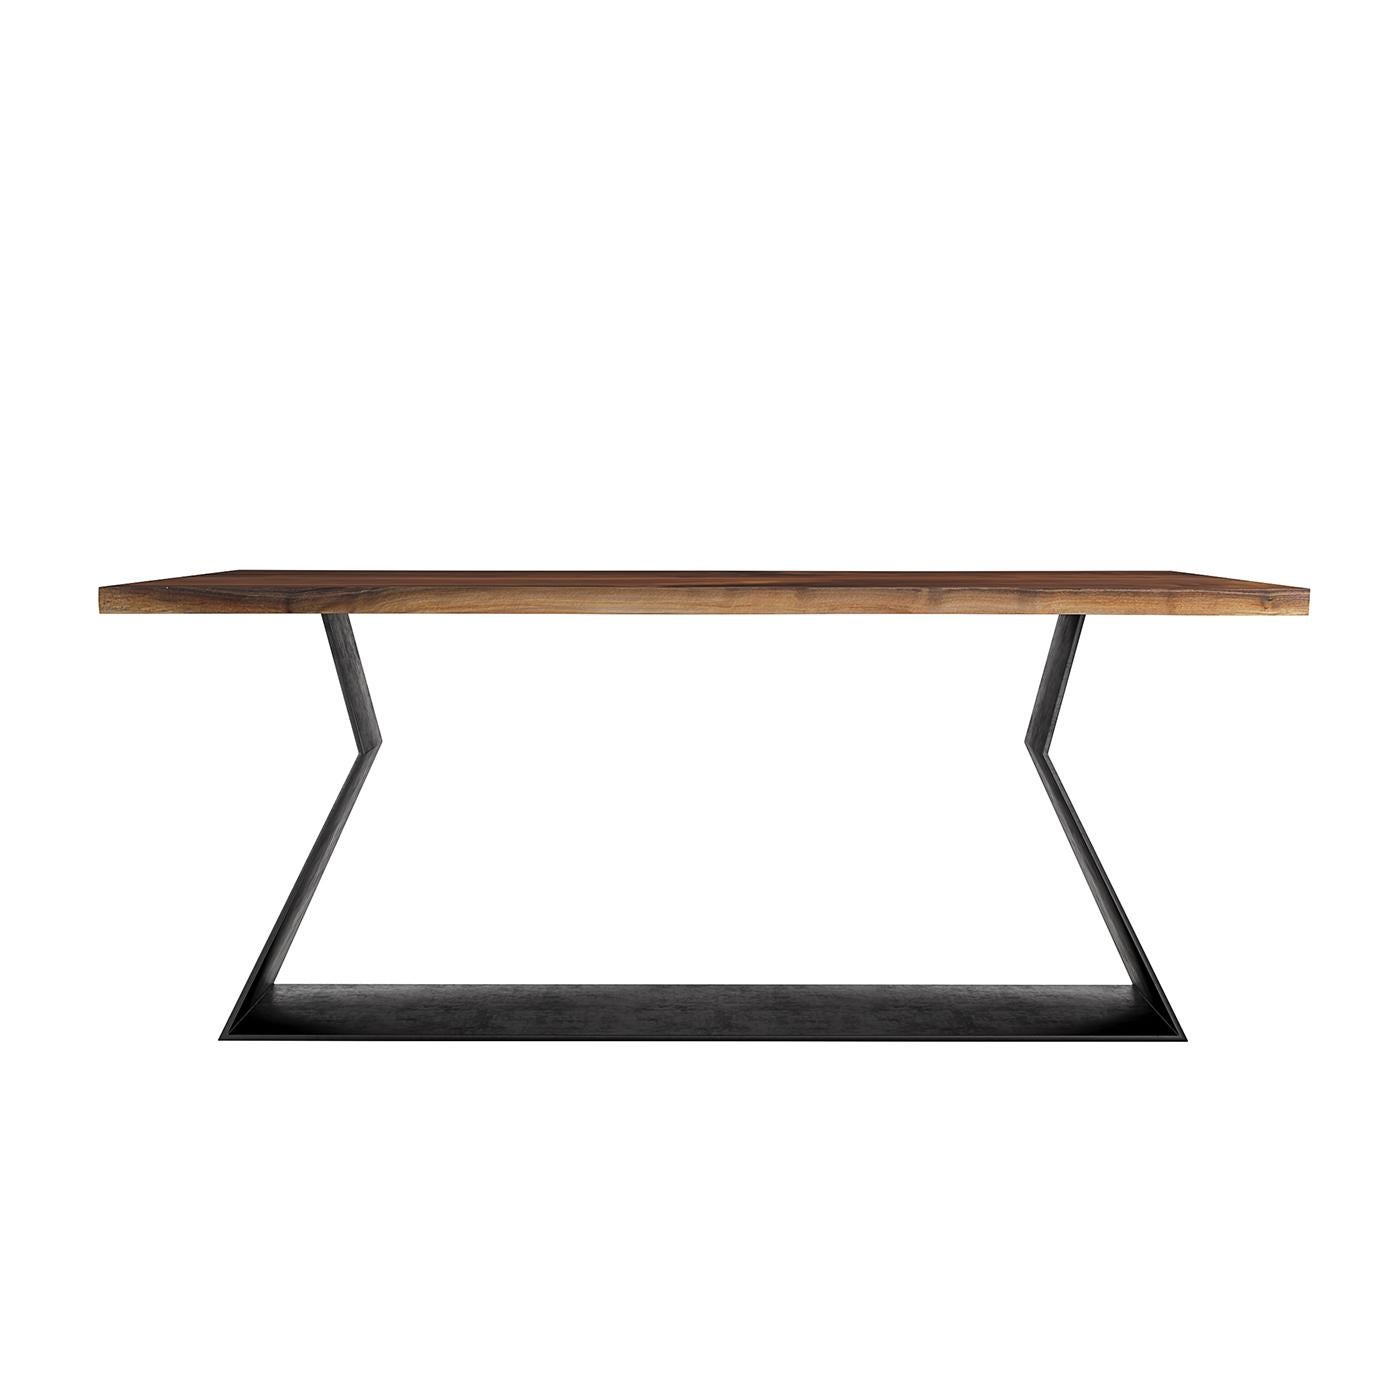 À la fois minimaliste et d'inspiration industrielle, la table Ellen allie la simplicité à des matériaux et des finitions de haute qualité. Elle doit sa solidité structurelle à sa base en métal de 8 mm d'épaisseur, revêtue de poudre noire, travaillée